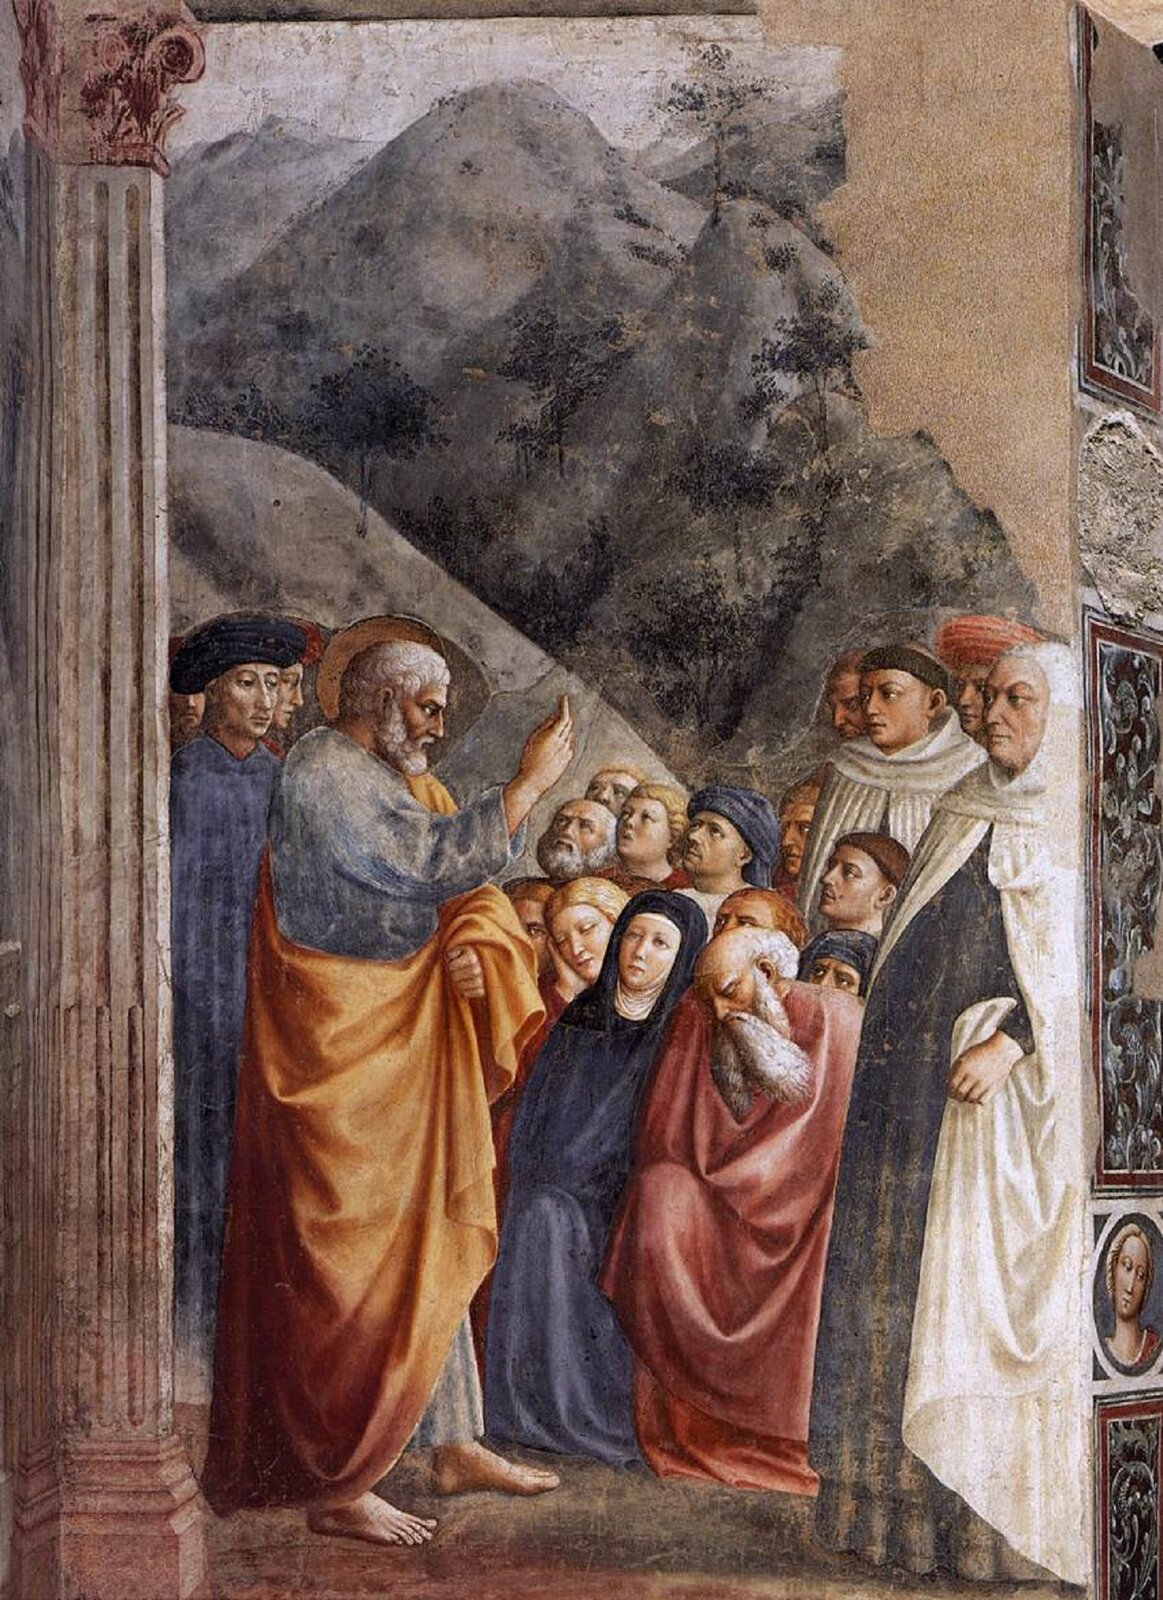 Ilustracja przedstawia fresk „Kazanie św. Piotra”, autorstwa Tommaso Masolina. W centrum wertykalnej kompozycji ukazana została wielopostaciowa scena na tle górzystego krajobrazu. Siwobrody mężczyzna w niebieskiej sukmanie, okrytej pomarańczowo‑żółtym płaszczem, wznosi prawą rękę do góry tak, jakby coś tłumaczył. Zgromadzone wokół Apostoła postacie kobiet i mężczyzn wpatrzone, wsłuchują się w jego słowa. Część z nich przykucnęła, natomiast pozostali stoją. Widz spogląda na scenę z wnętrza budowli. Na pierwszym planie po lewej stronie znajduje się fragment kanelowanego pilastra z korynckim kapitelem, natomiast po prawej namalowane zostało uchylone skrzydło drzwi z motywem roślinnym oraz portretem kobiety w kole. Dzieło utrzymane jest w wąskiej gamie ugrów, błękitów i czerwieni z mocnym akcentem pomarańczowo‑żółtego koloru płaszcza, który okrywa postać św. Piotra.